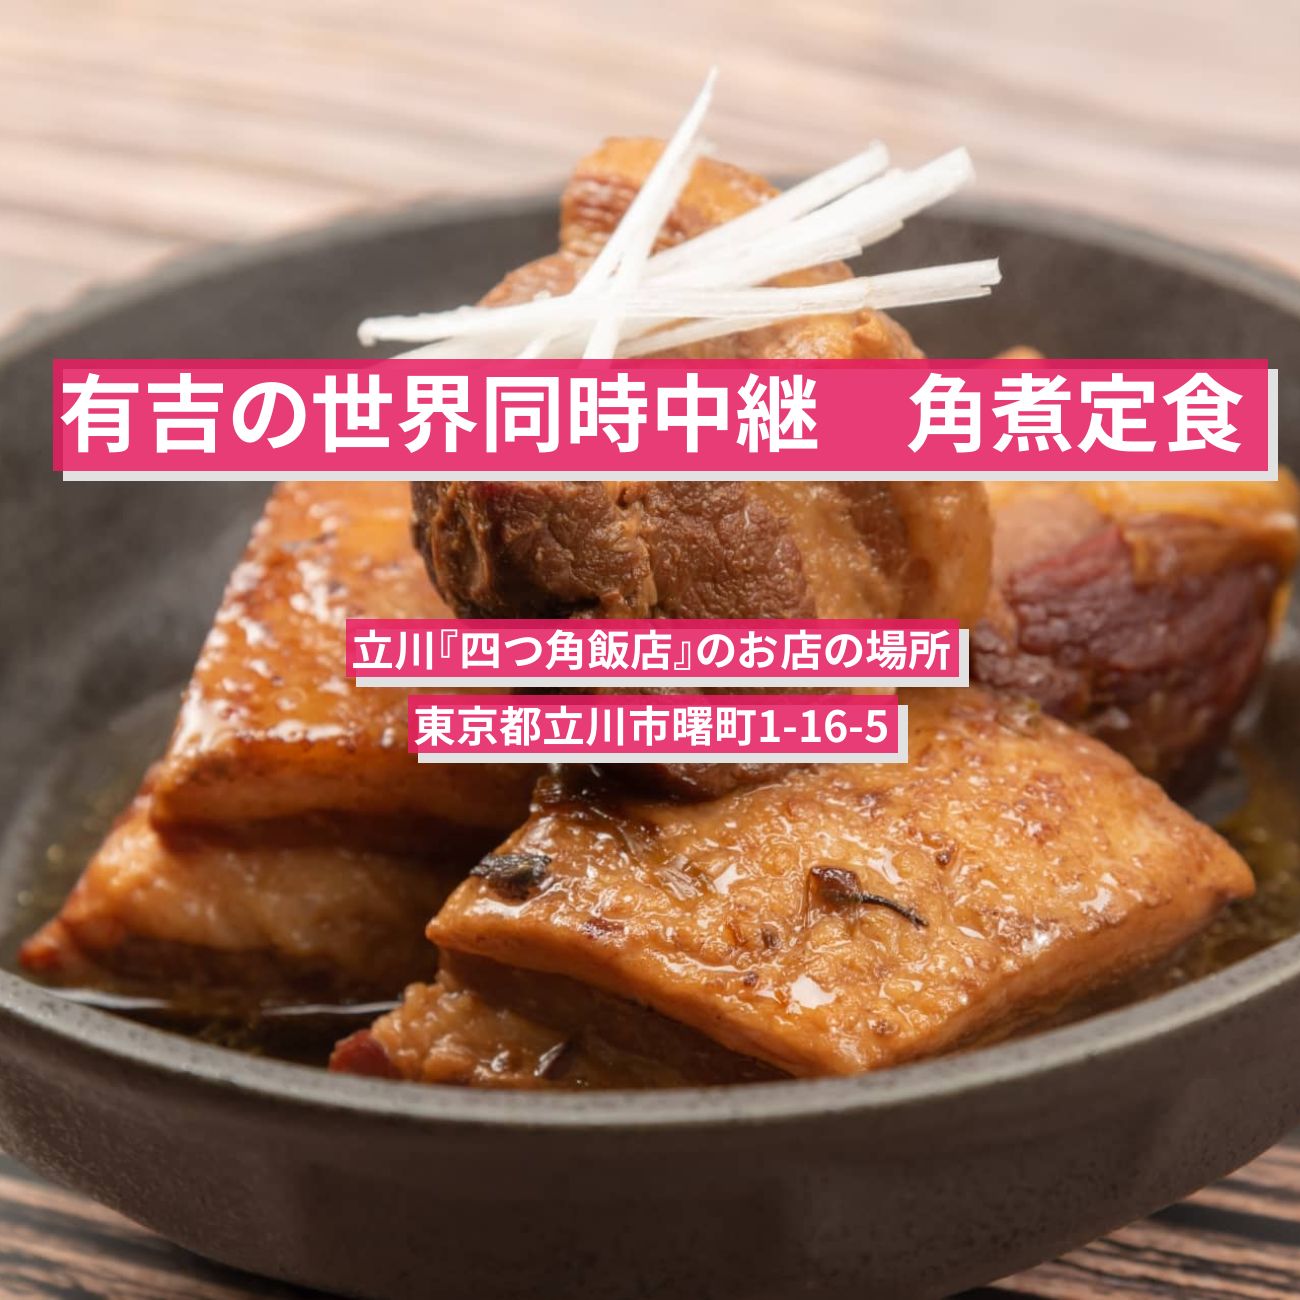 【有吉の世界同時中継】角煮定食『四つ角飯店』立川のお店の場所